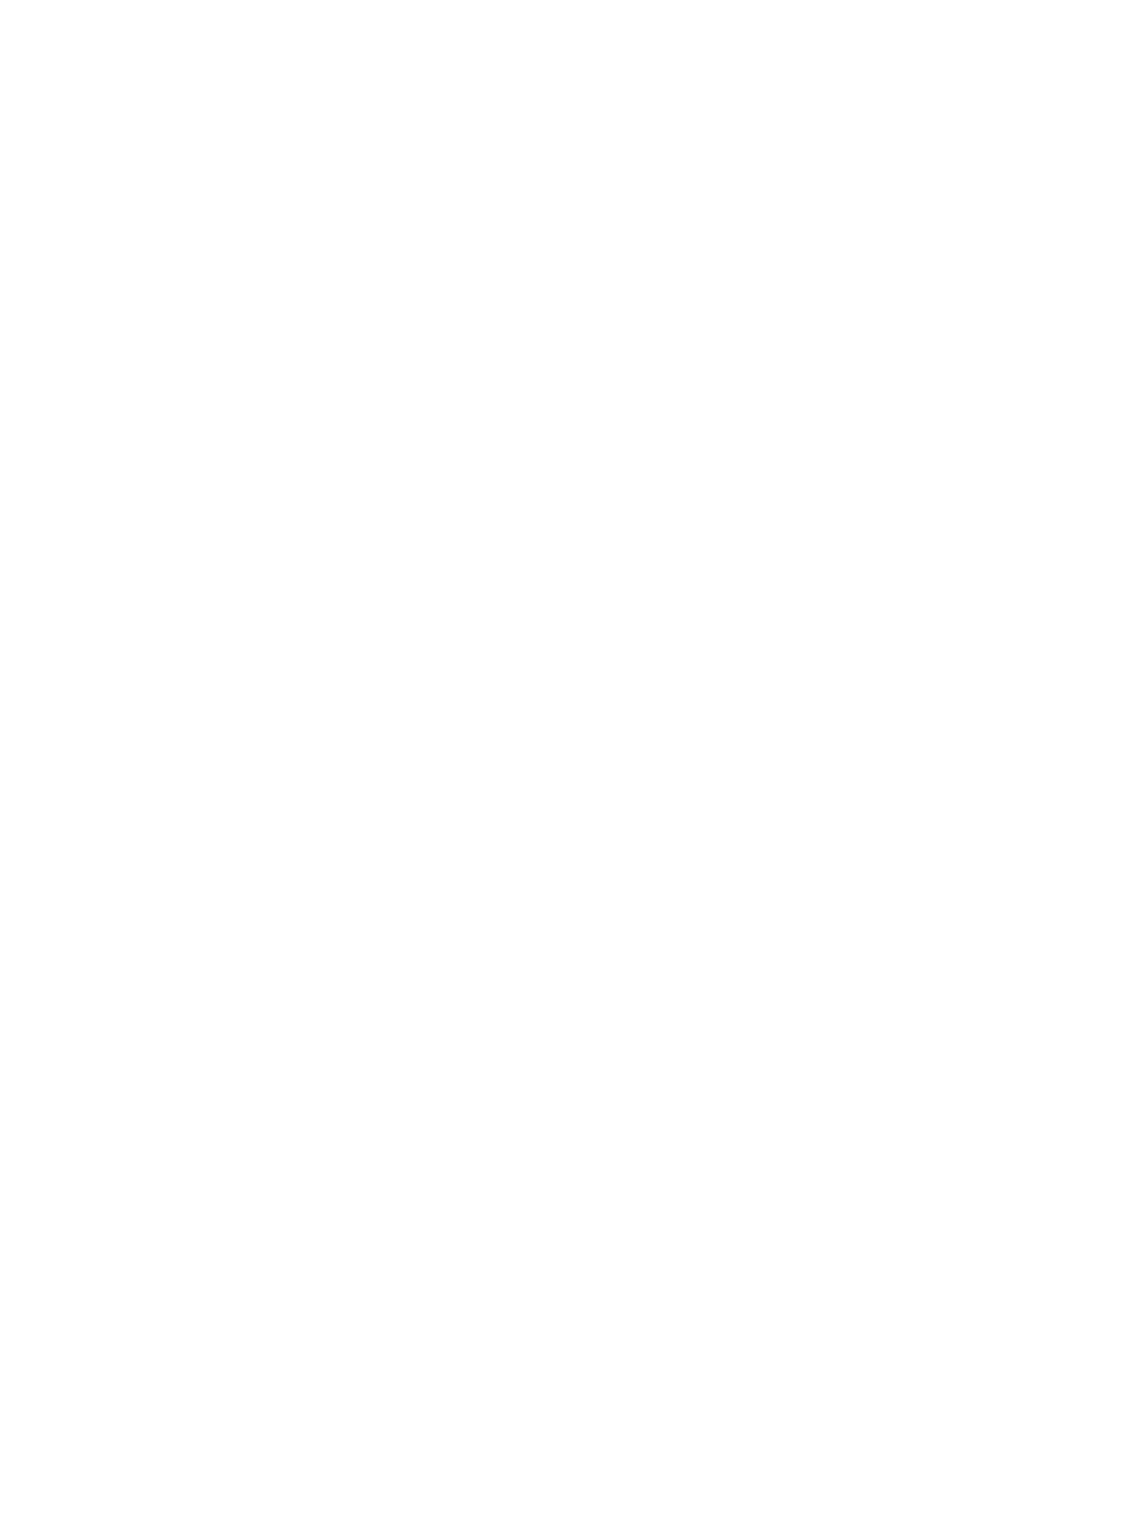 Ericsson logo pour fonds sombres (PNG transparent)